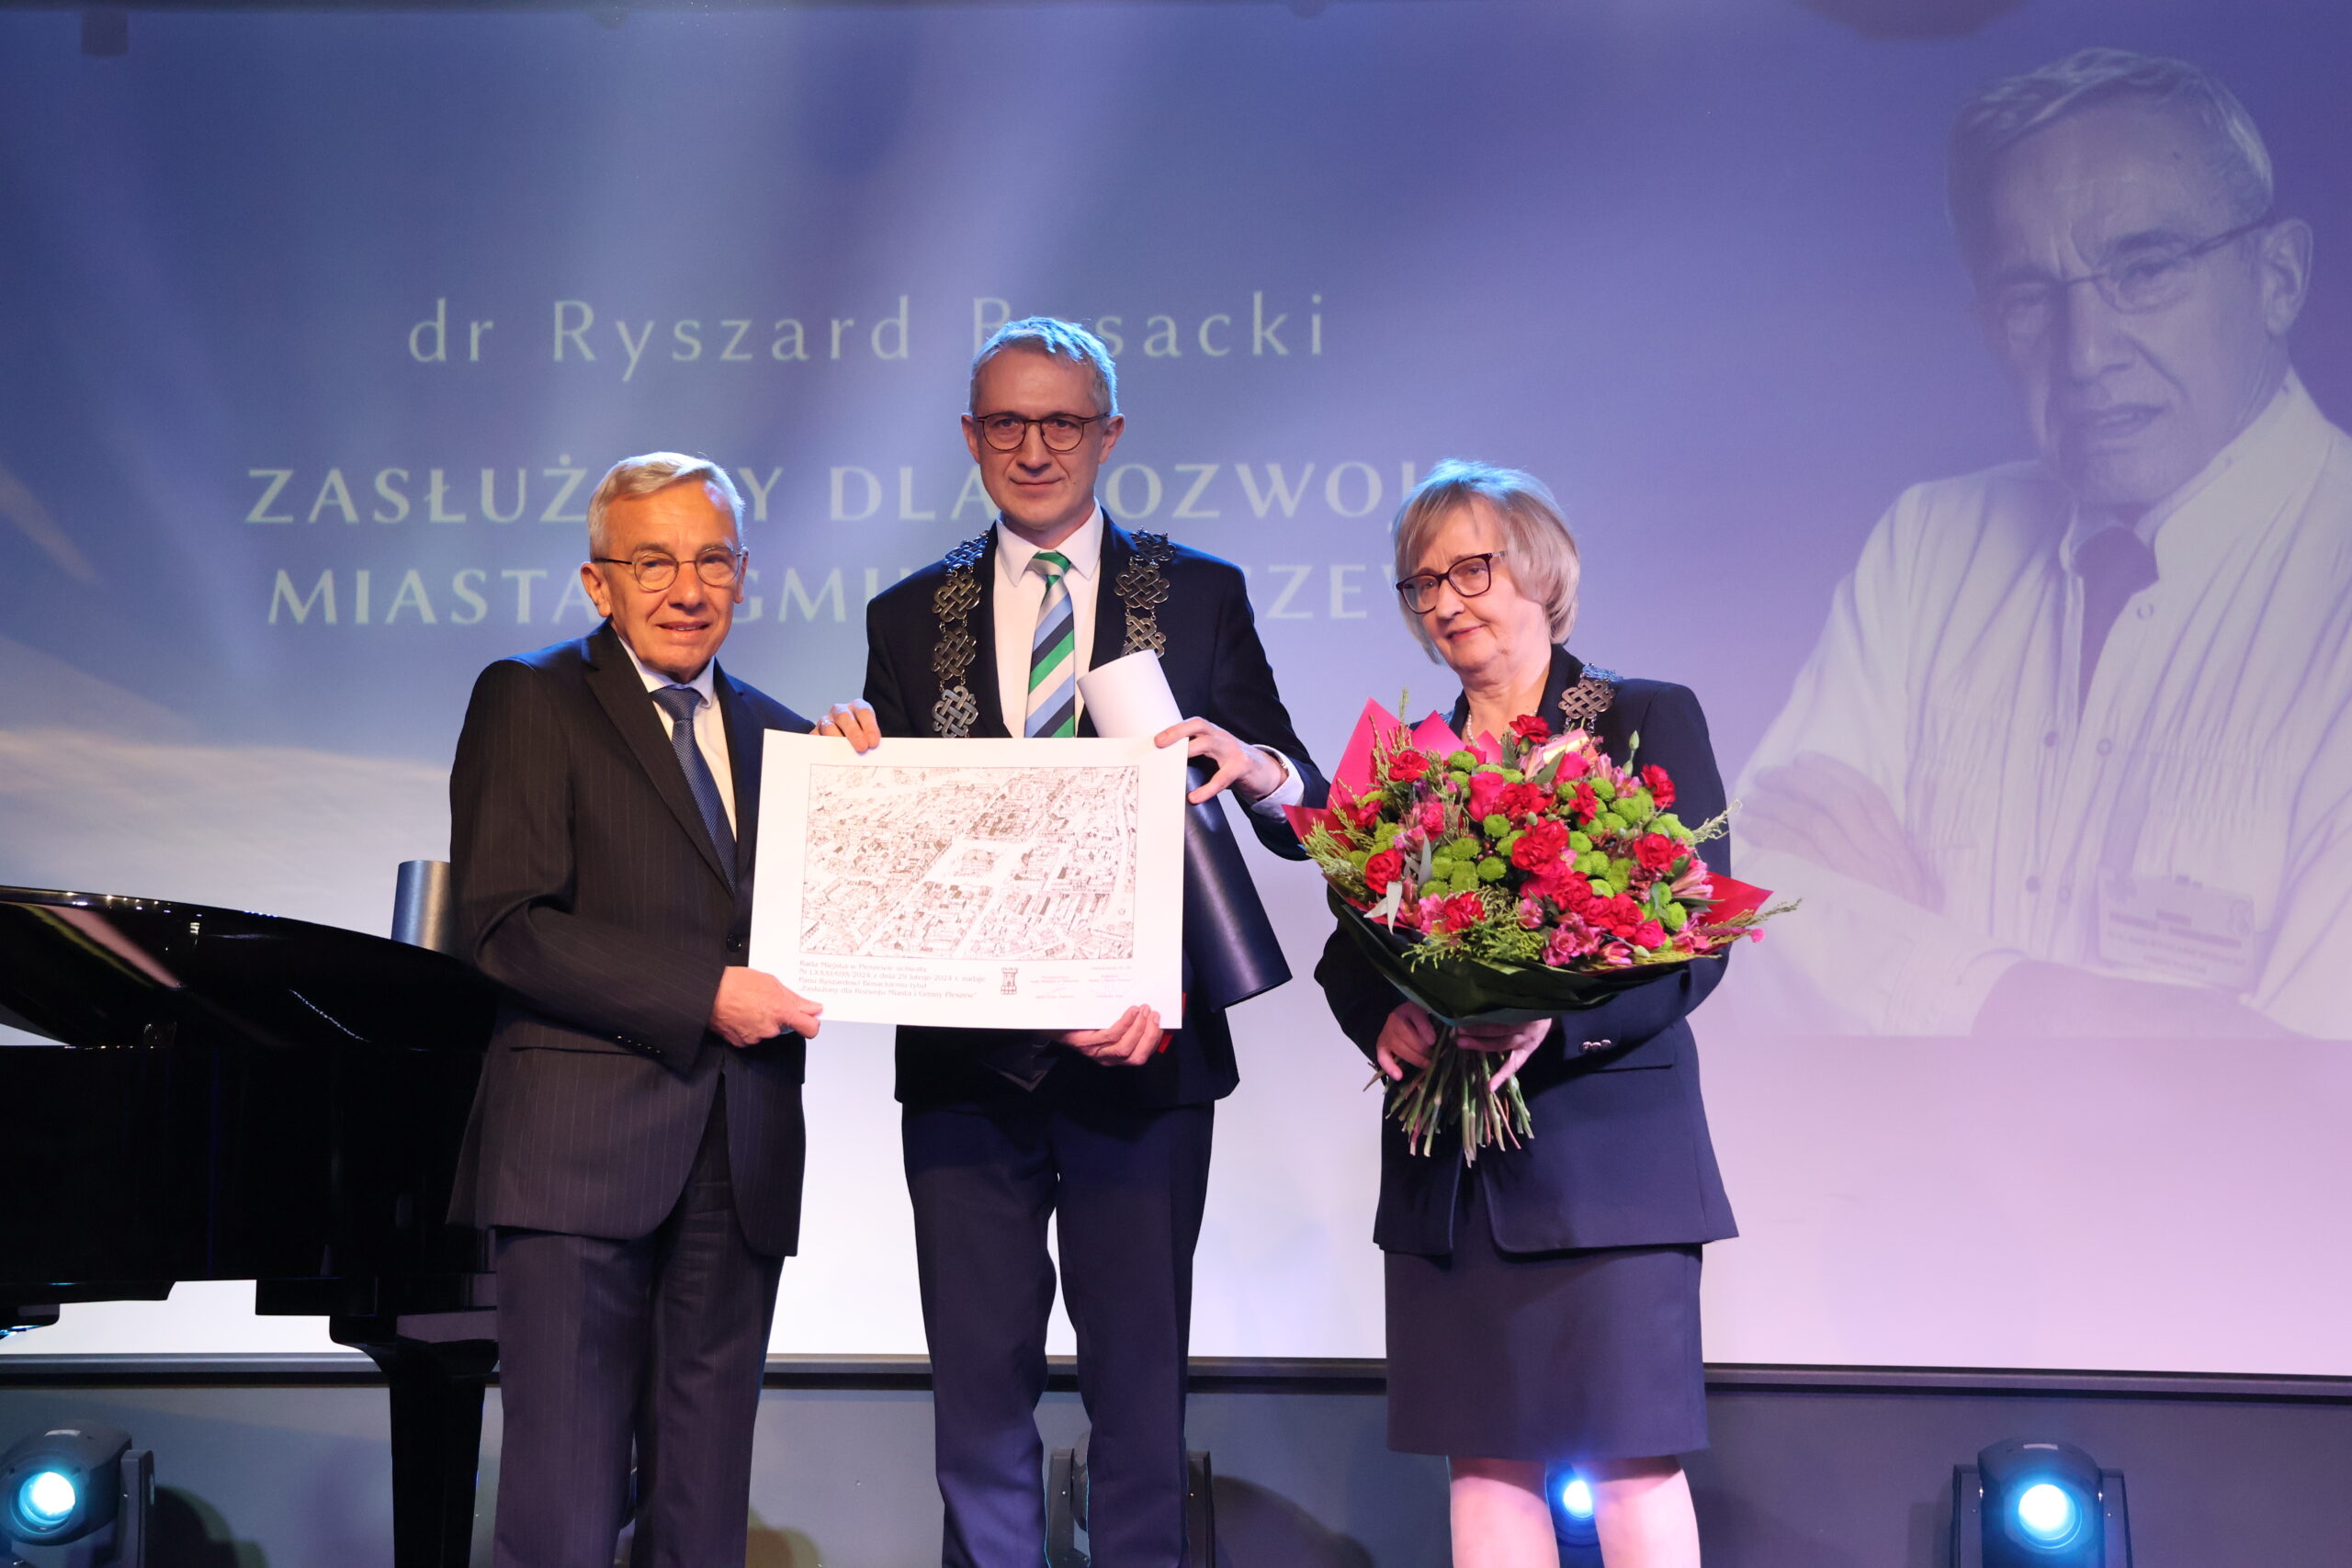 Wręczenie tytułu Zasłużony dla Rozwoju MiG Pleszew dr. Ryszardowi Bosackiemu.